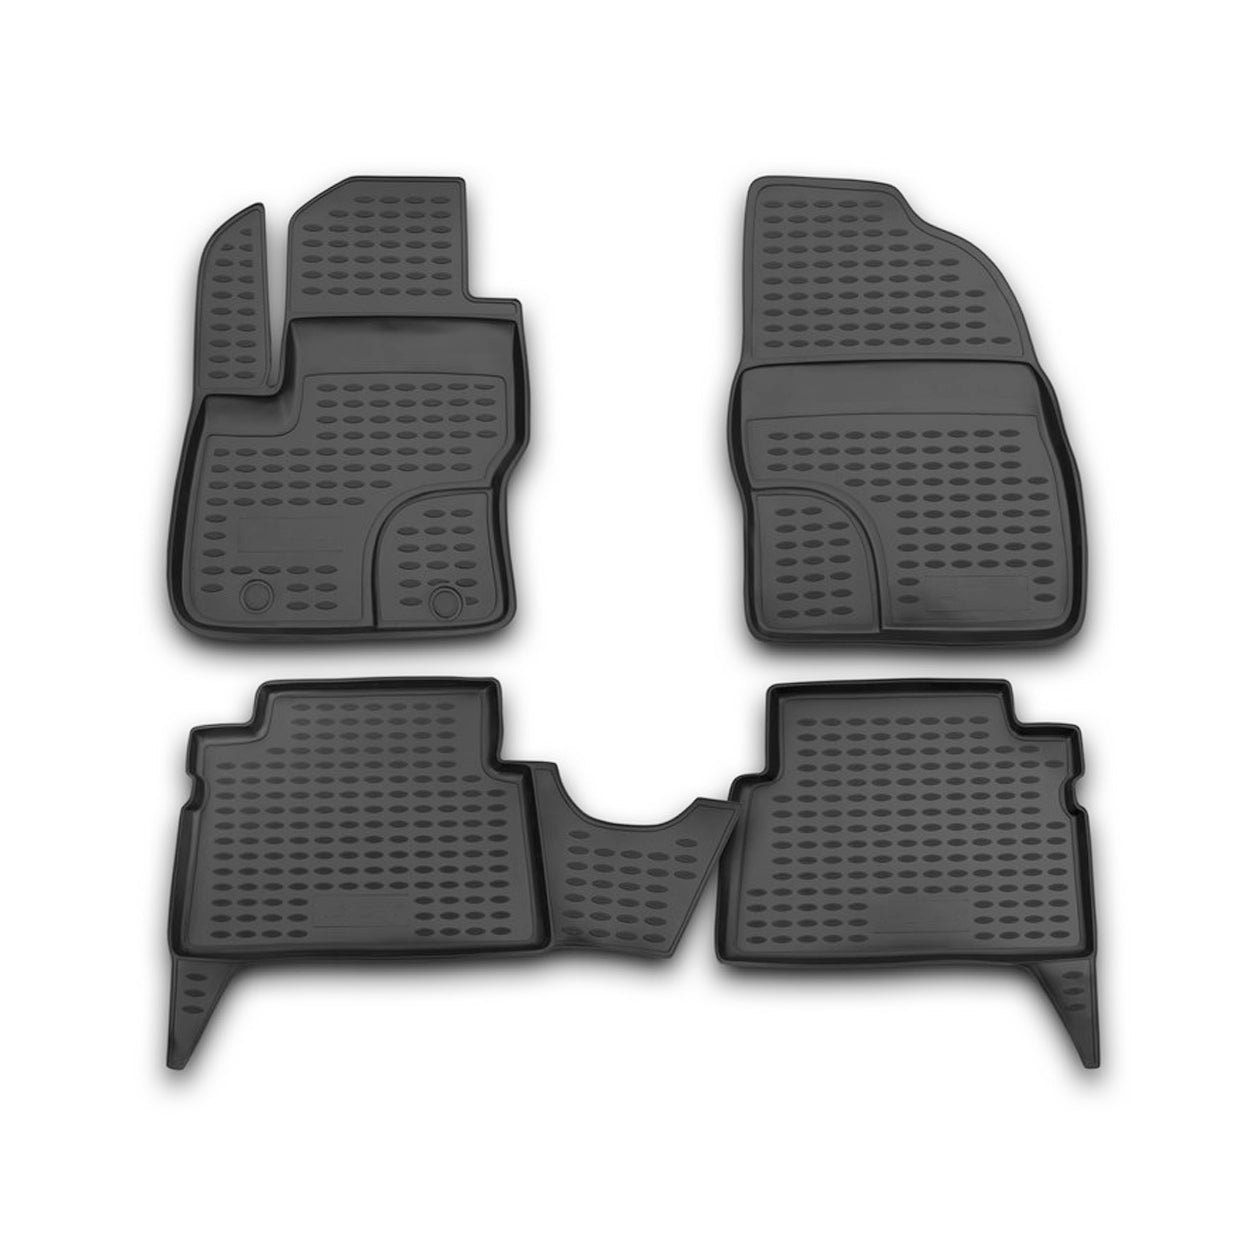 Fußmatten für Ford Kuga 2008-2013 Passform Hoher Rand Gummimatten Schwarz